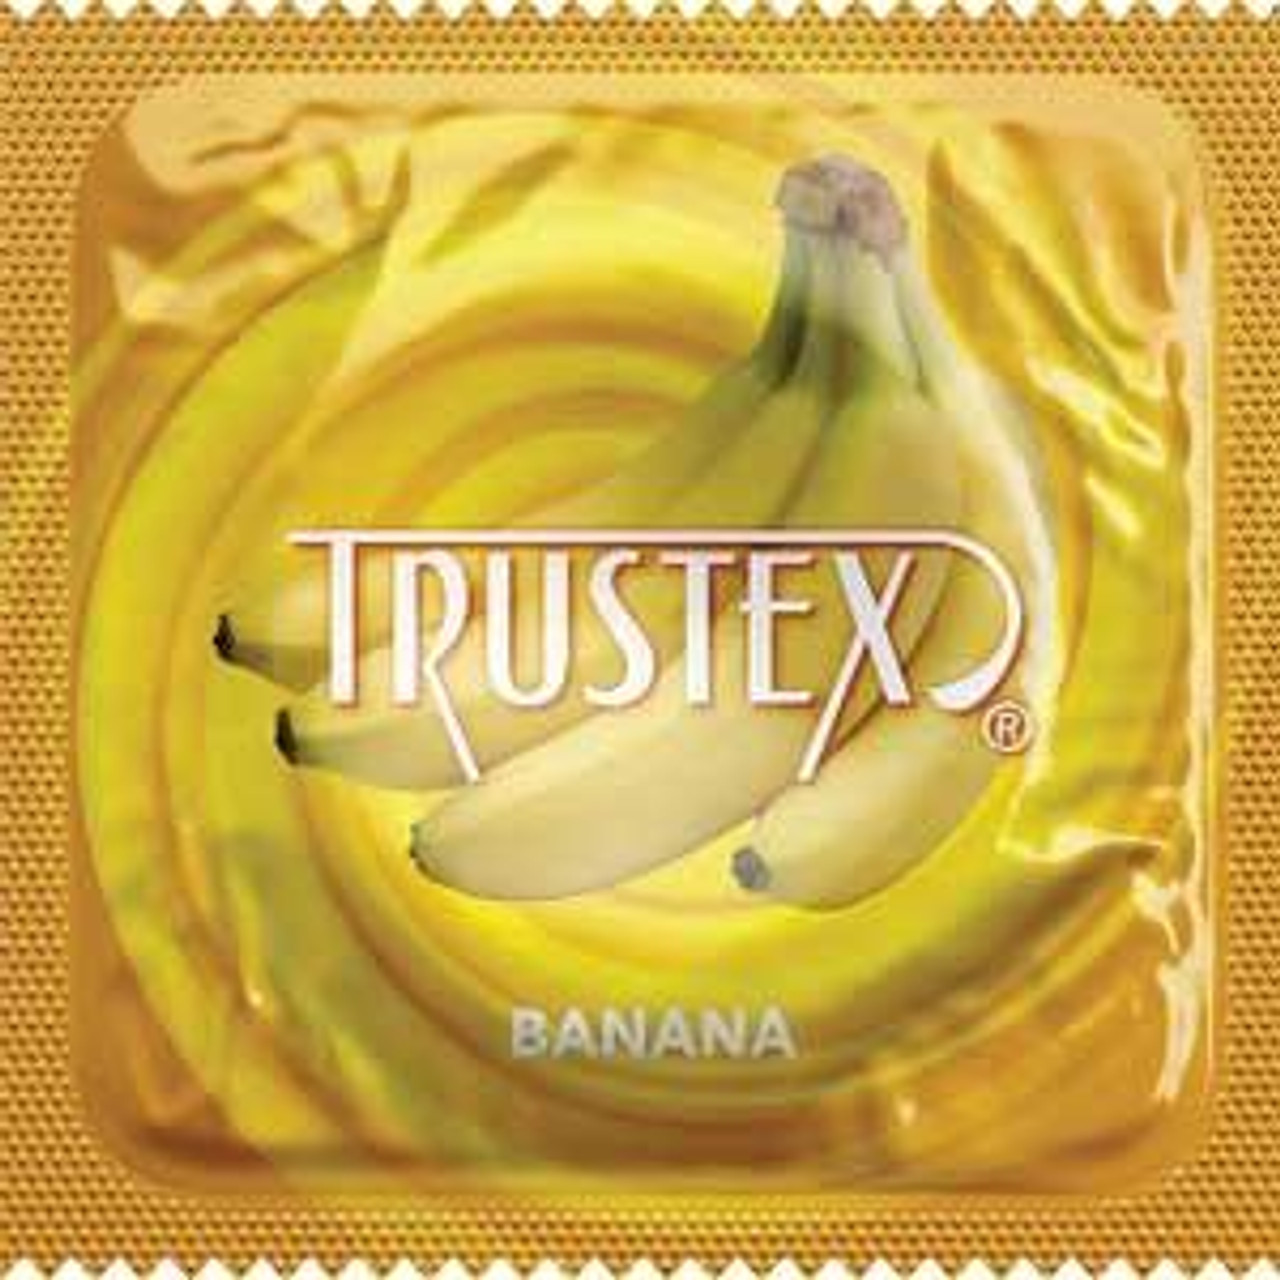 Trustex Banana Flavor Condoms | - Buy Trustex Condoms Online at CondomDepot.com